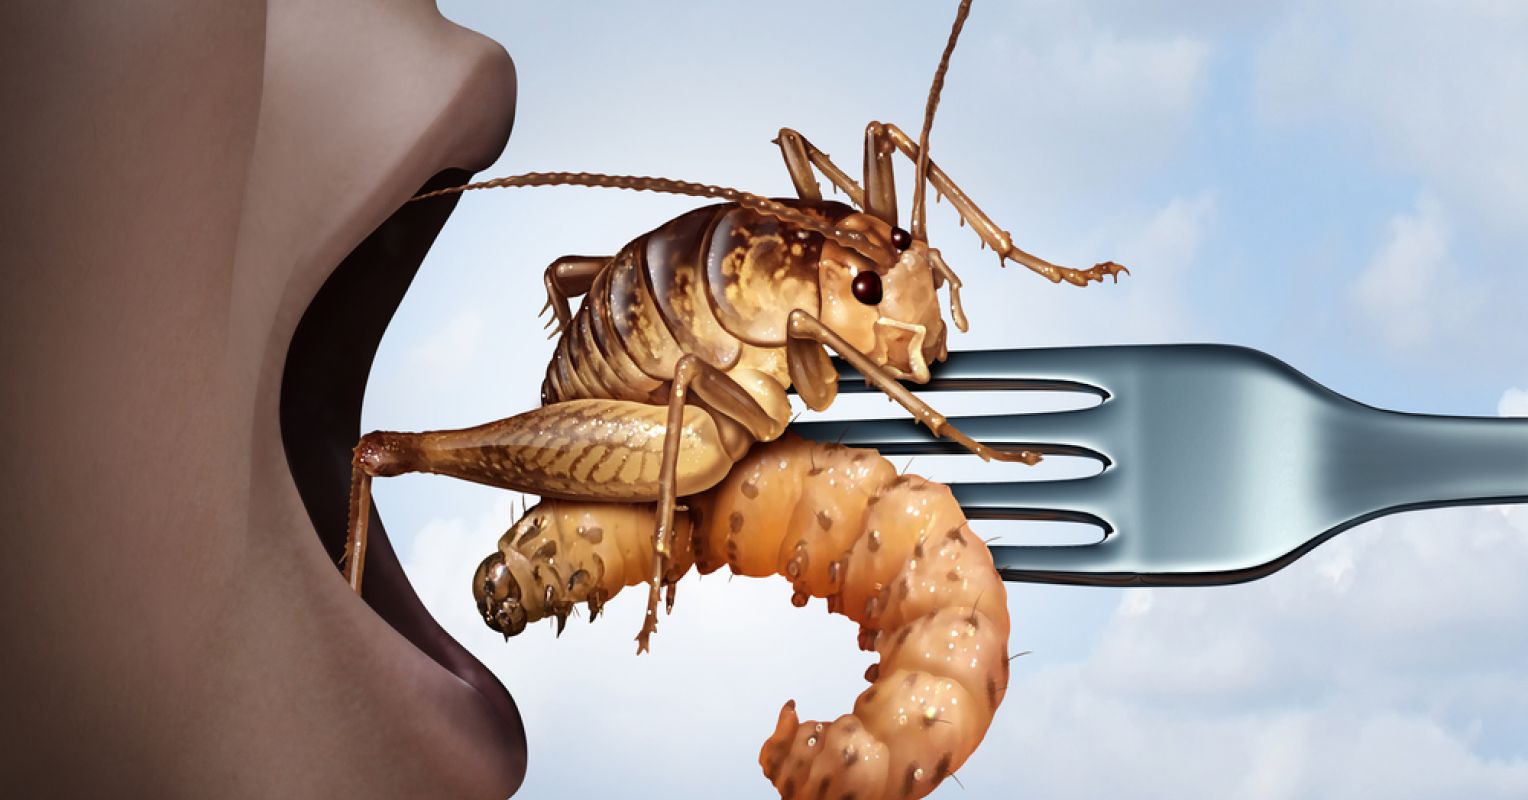 Jetzt werden auch in Japan Insekten als TOP-Lebensmittel beworben! Doch Experten warnen!